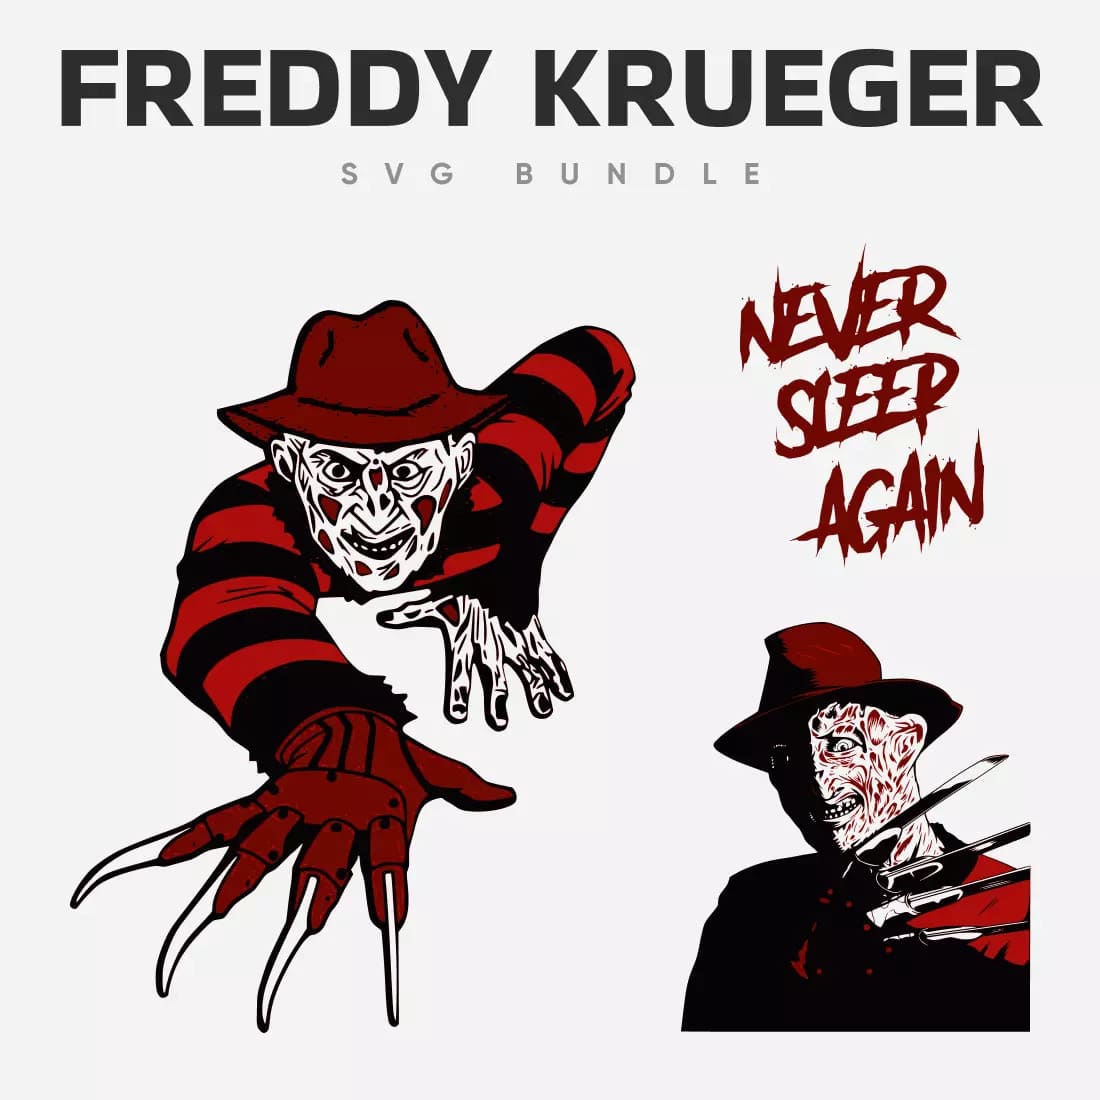 Freddy Krueger SVG Bundle Preview 5.